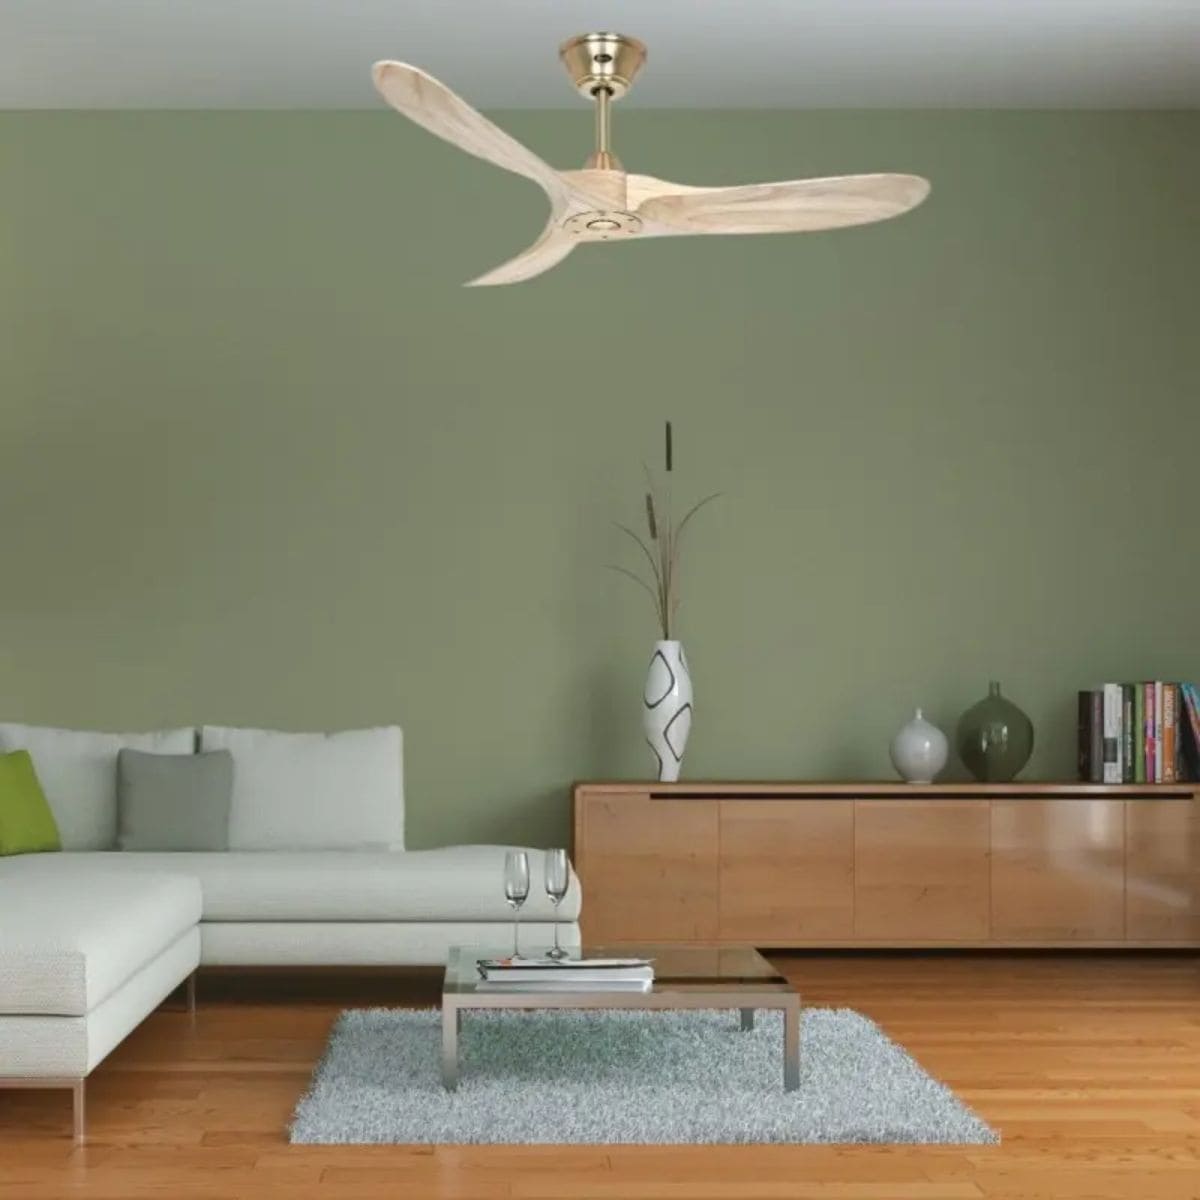 Ventilateur de plafond en bois dans un salon vert (modèle Genuino de Casafan)